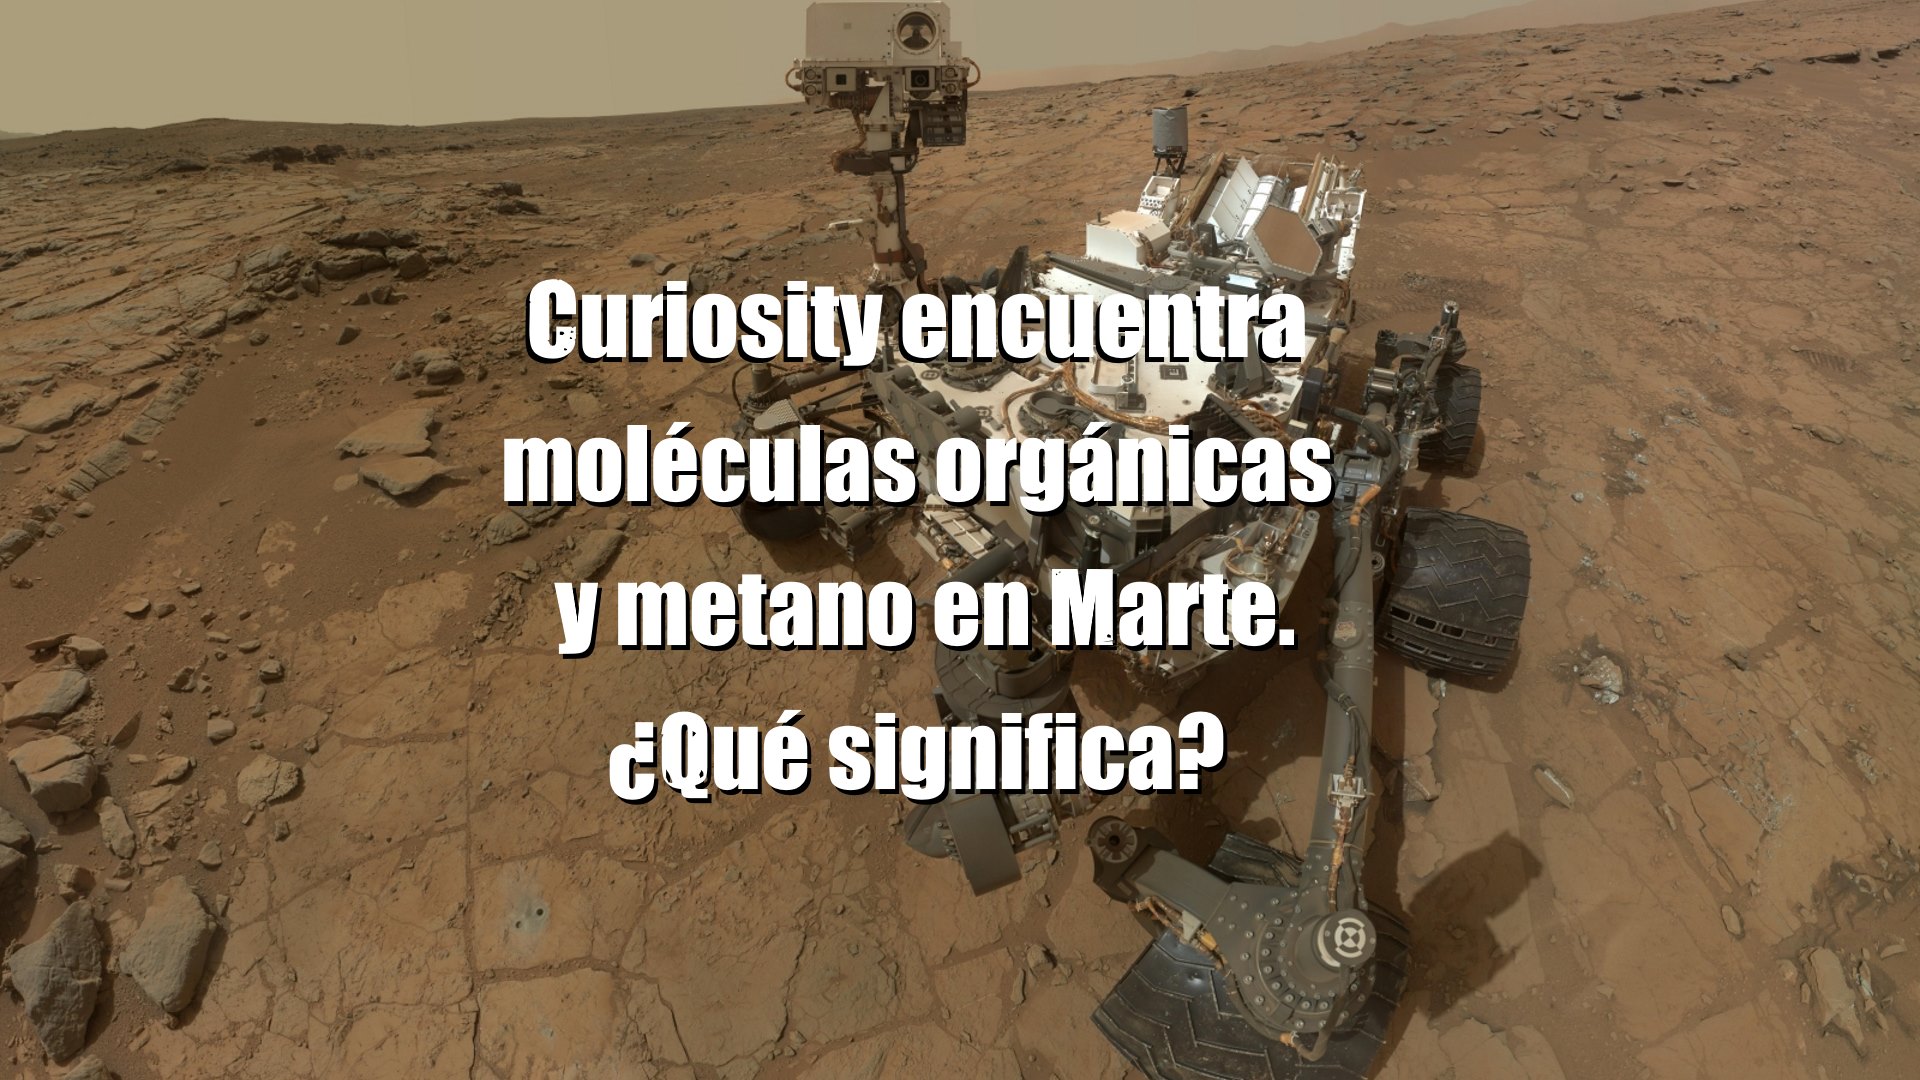 Las moléculas orgánicas y metano estacional en Marte